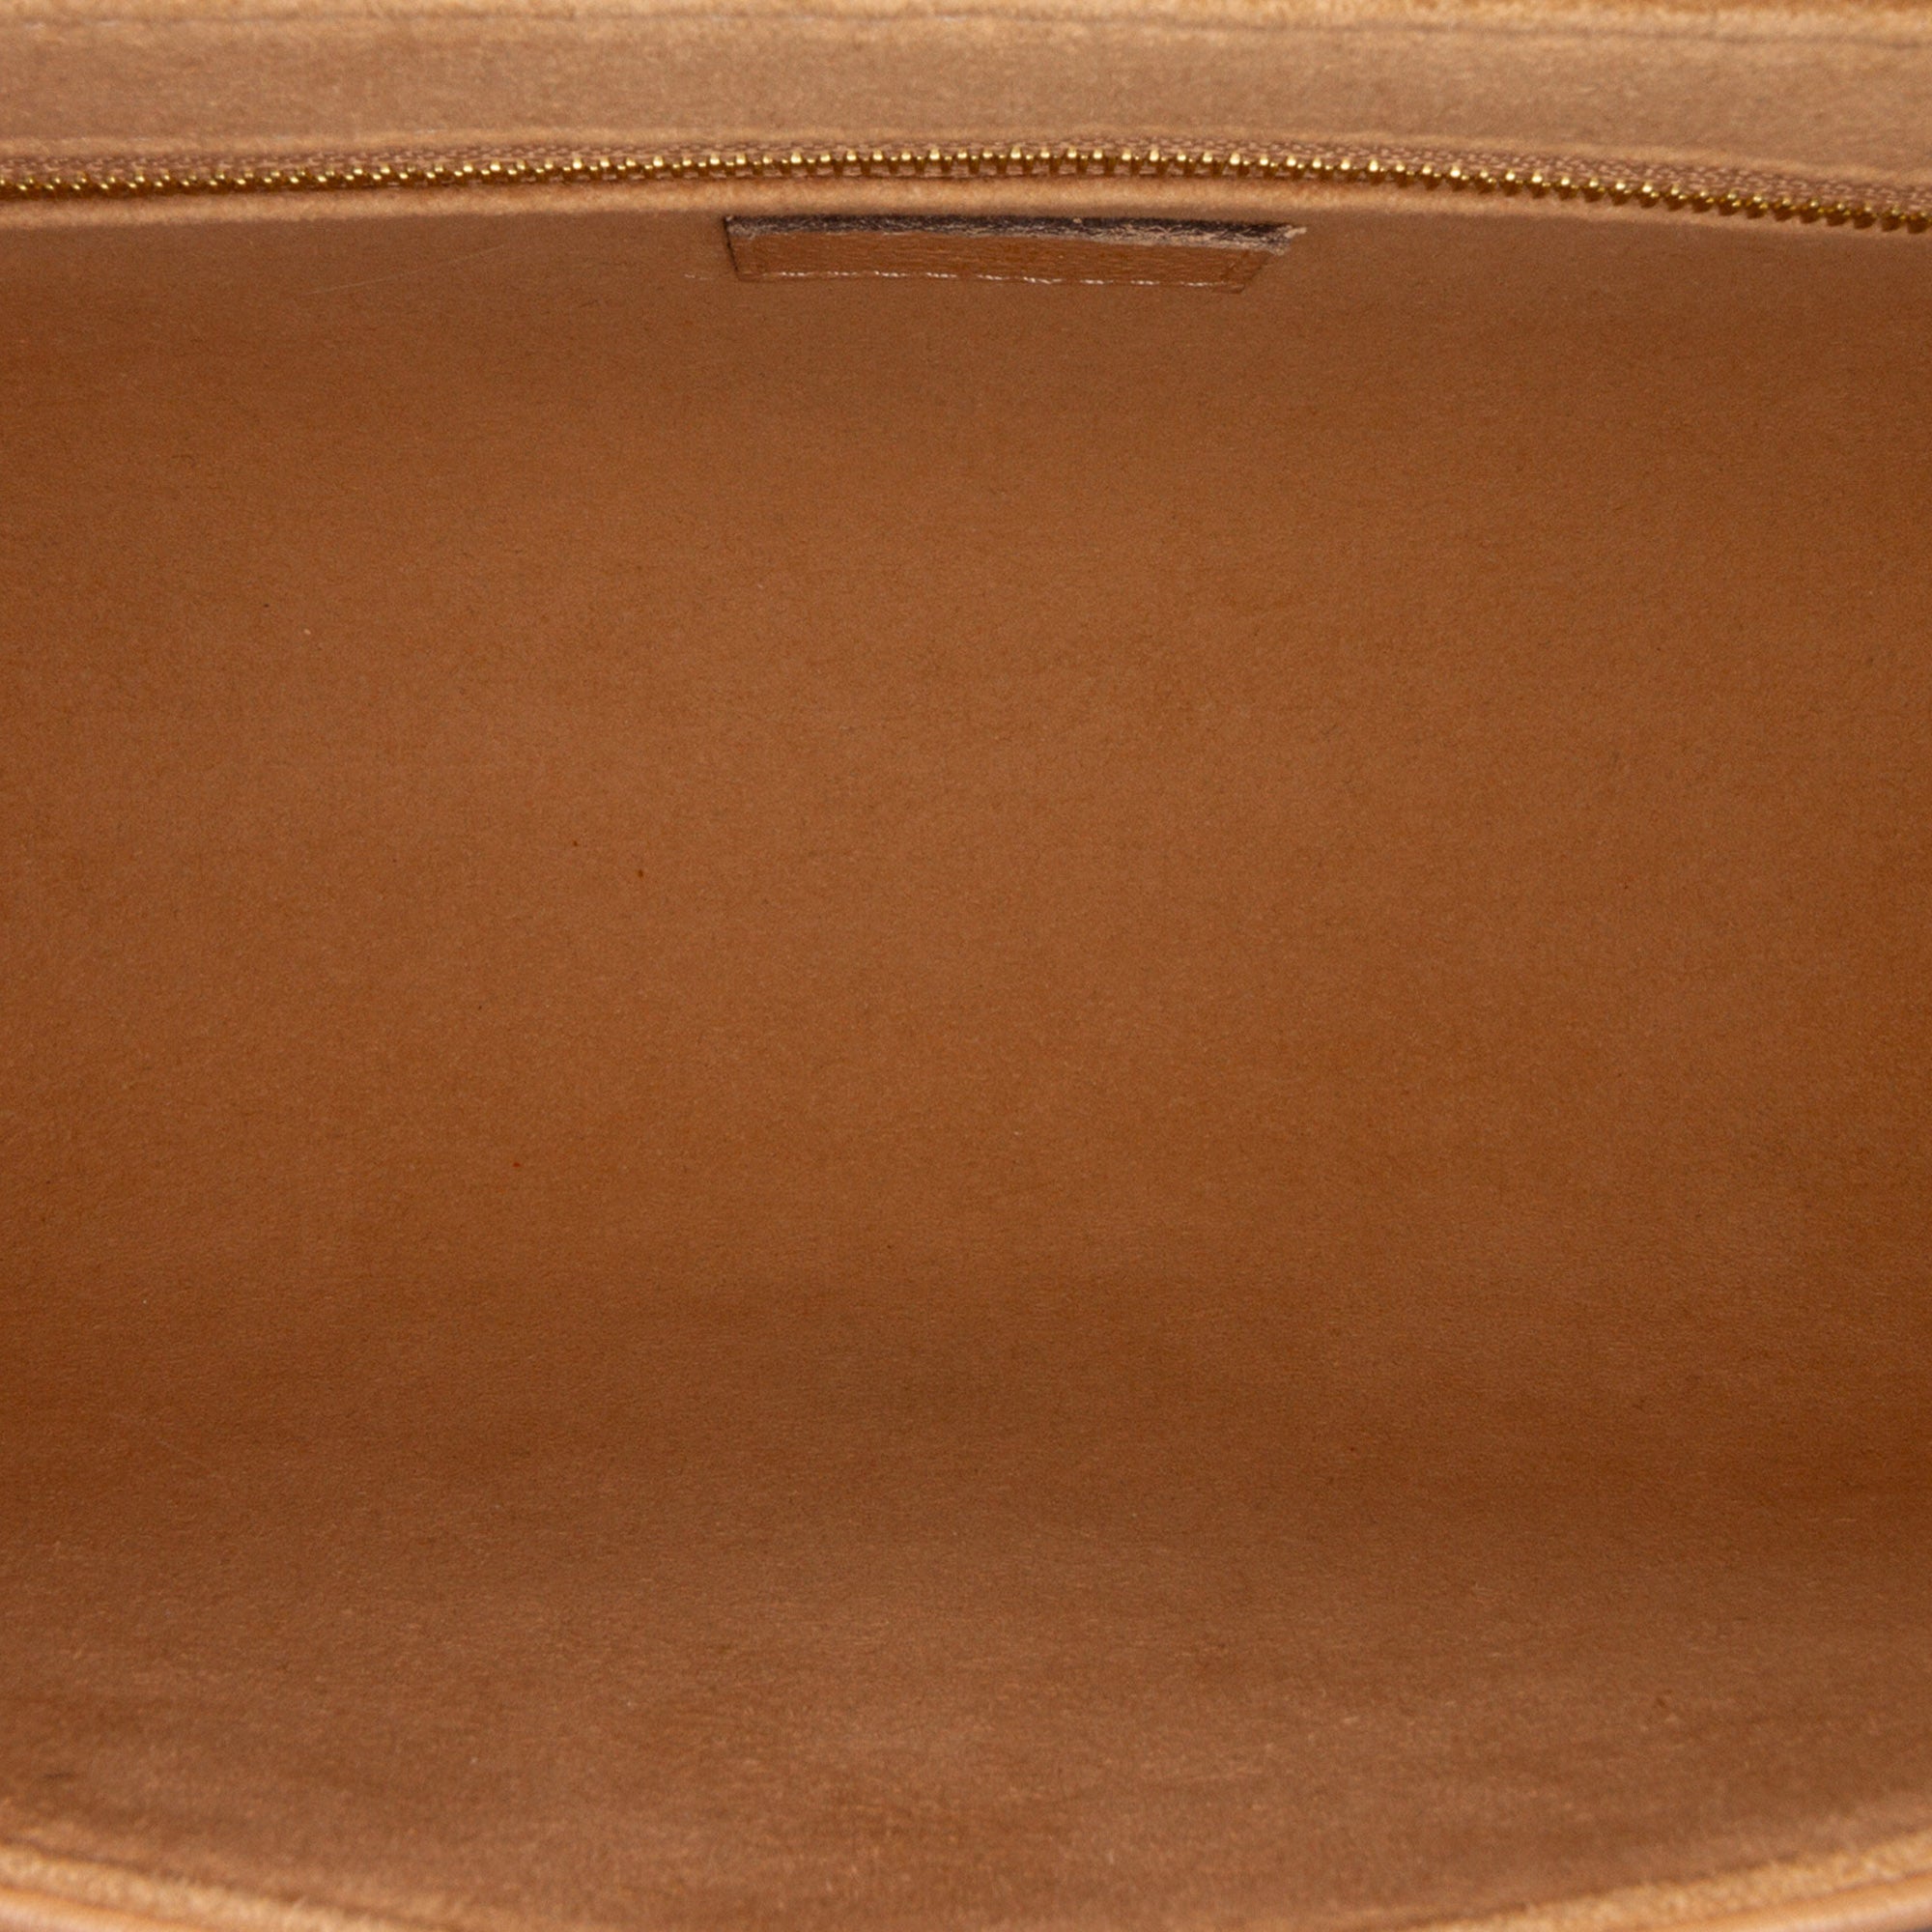 Louis Vuitton Monogram Empreinte Saint Germain PM Shoulder Bag, Louis  Vuitton Handbags